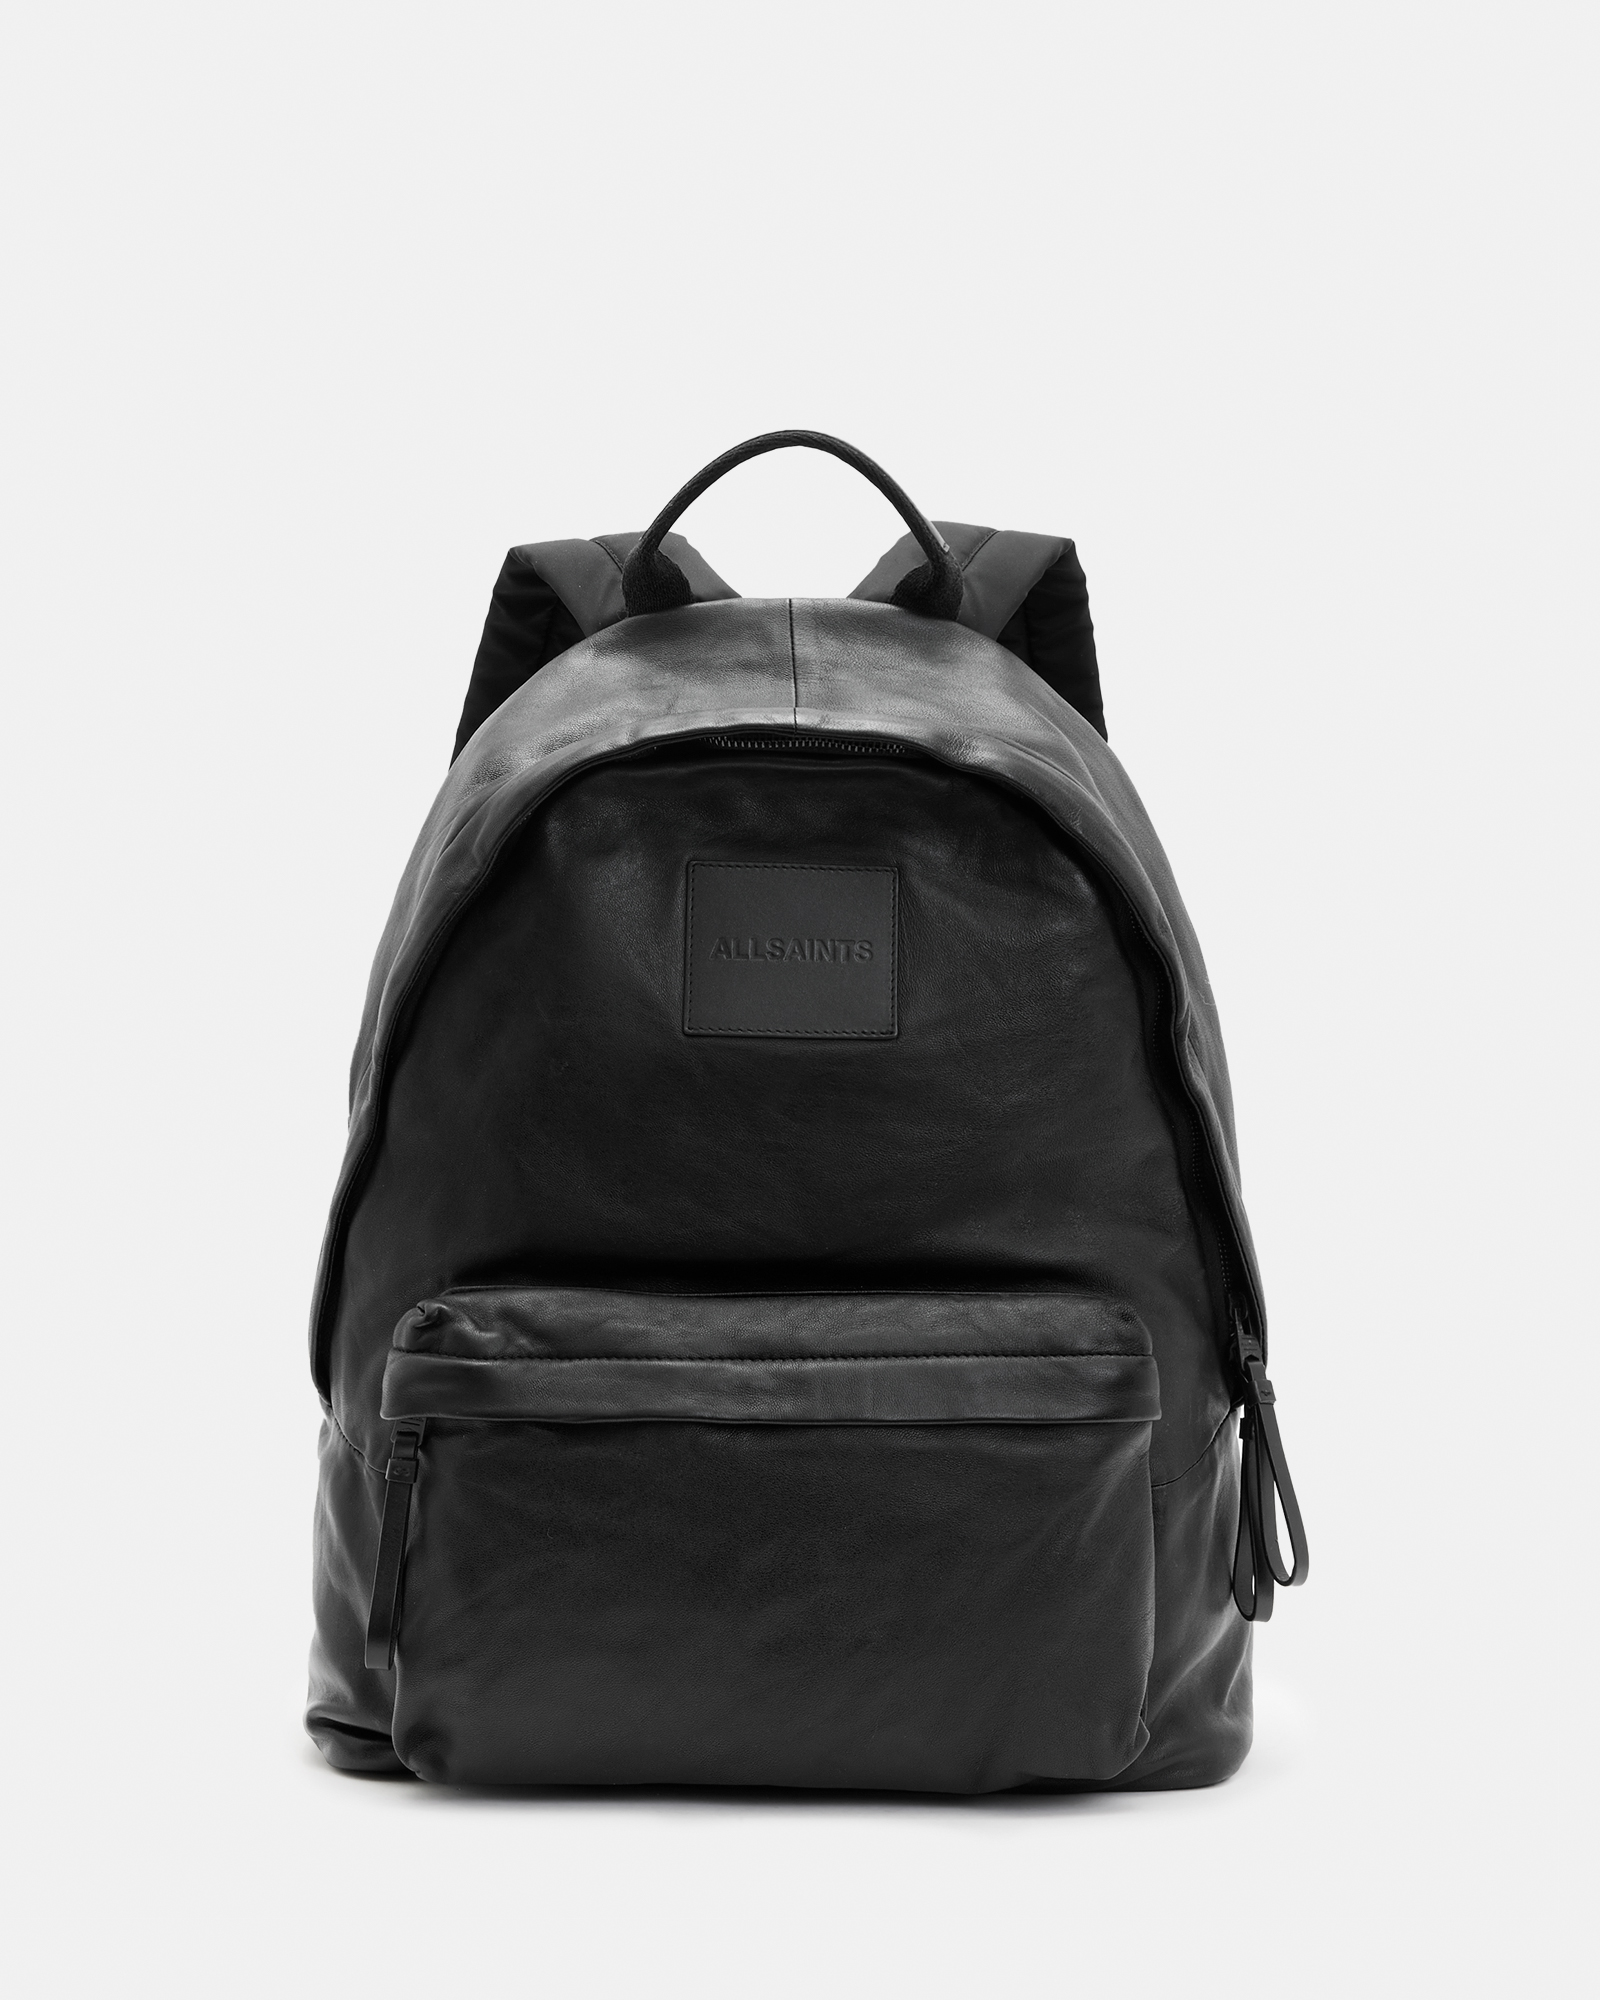 AllSaints Carabiner Embossed Logo Leather Backpack,, Black